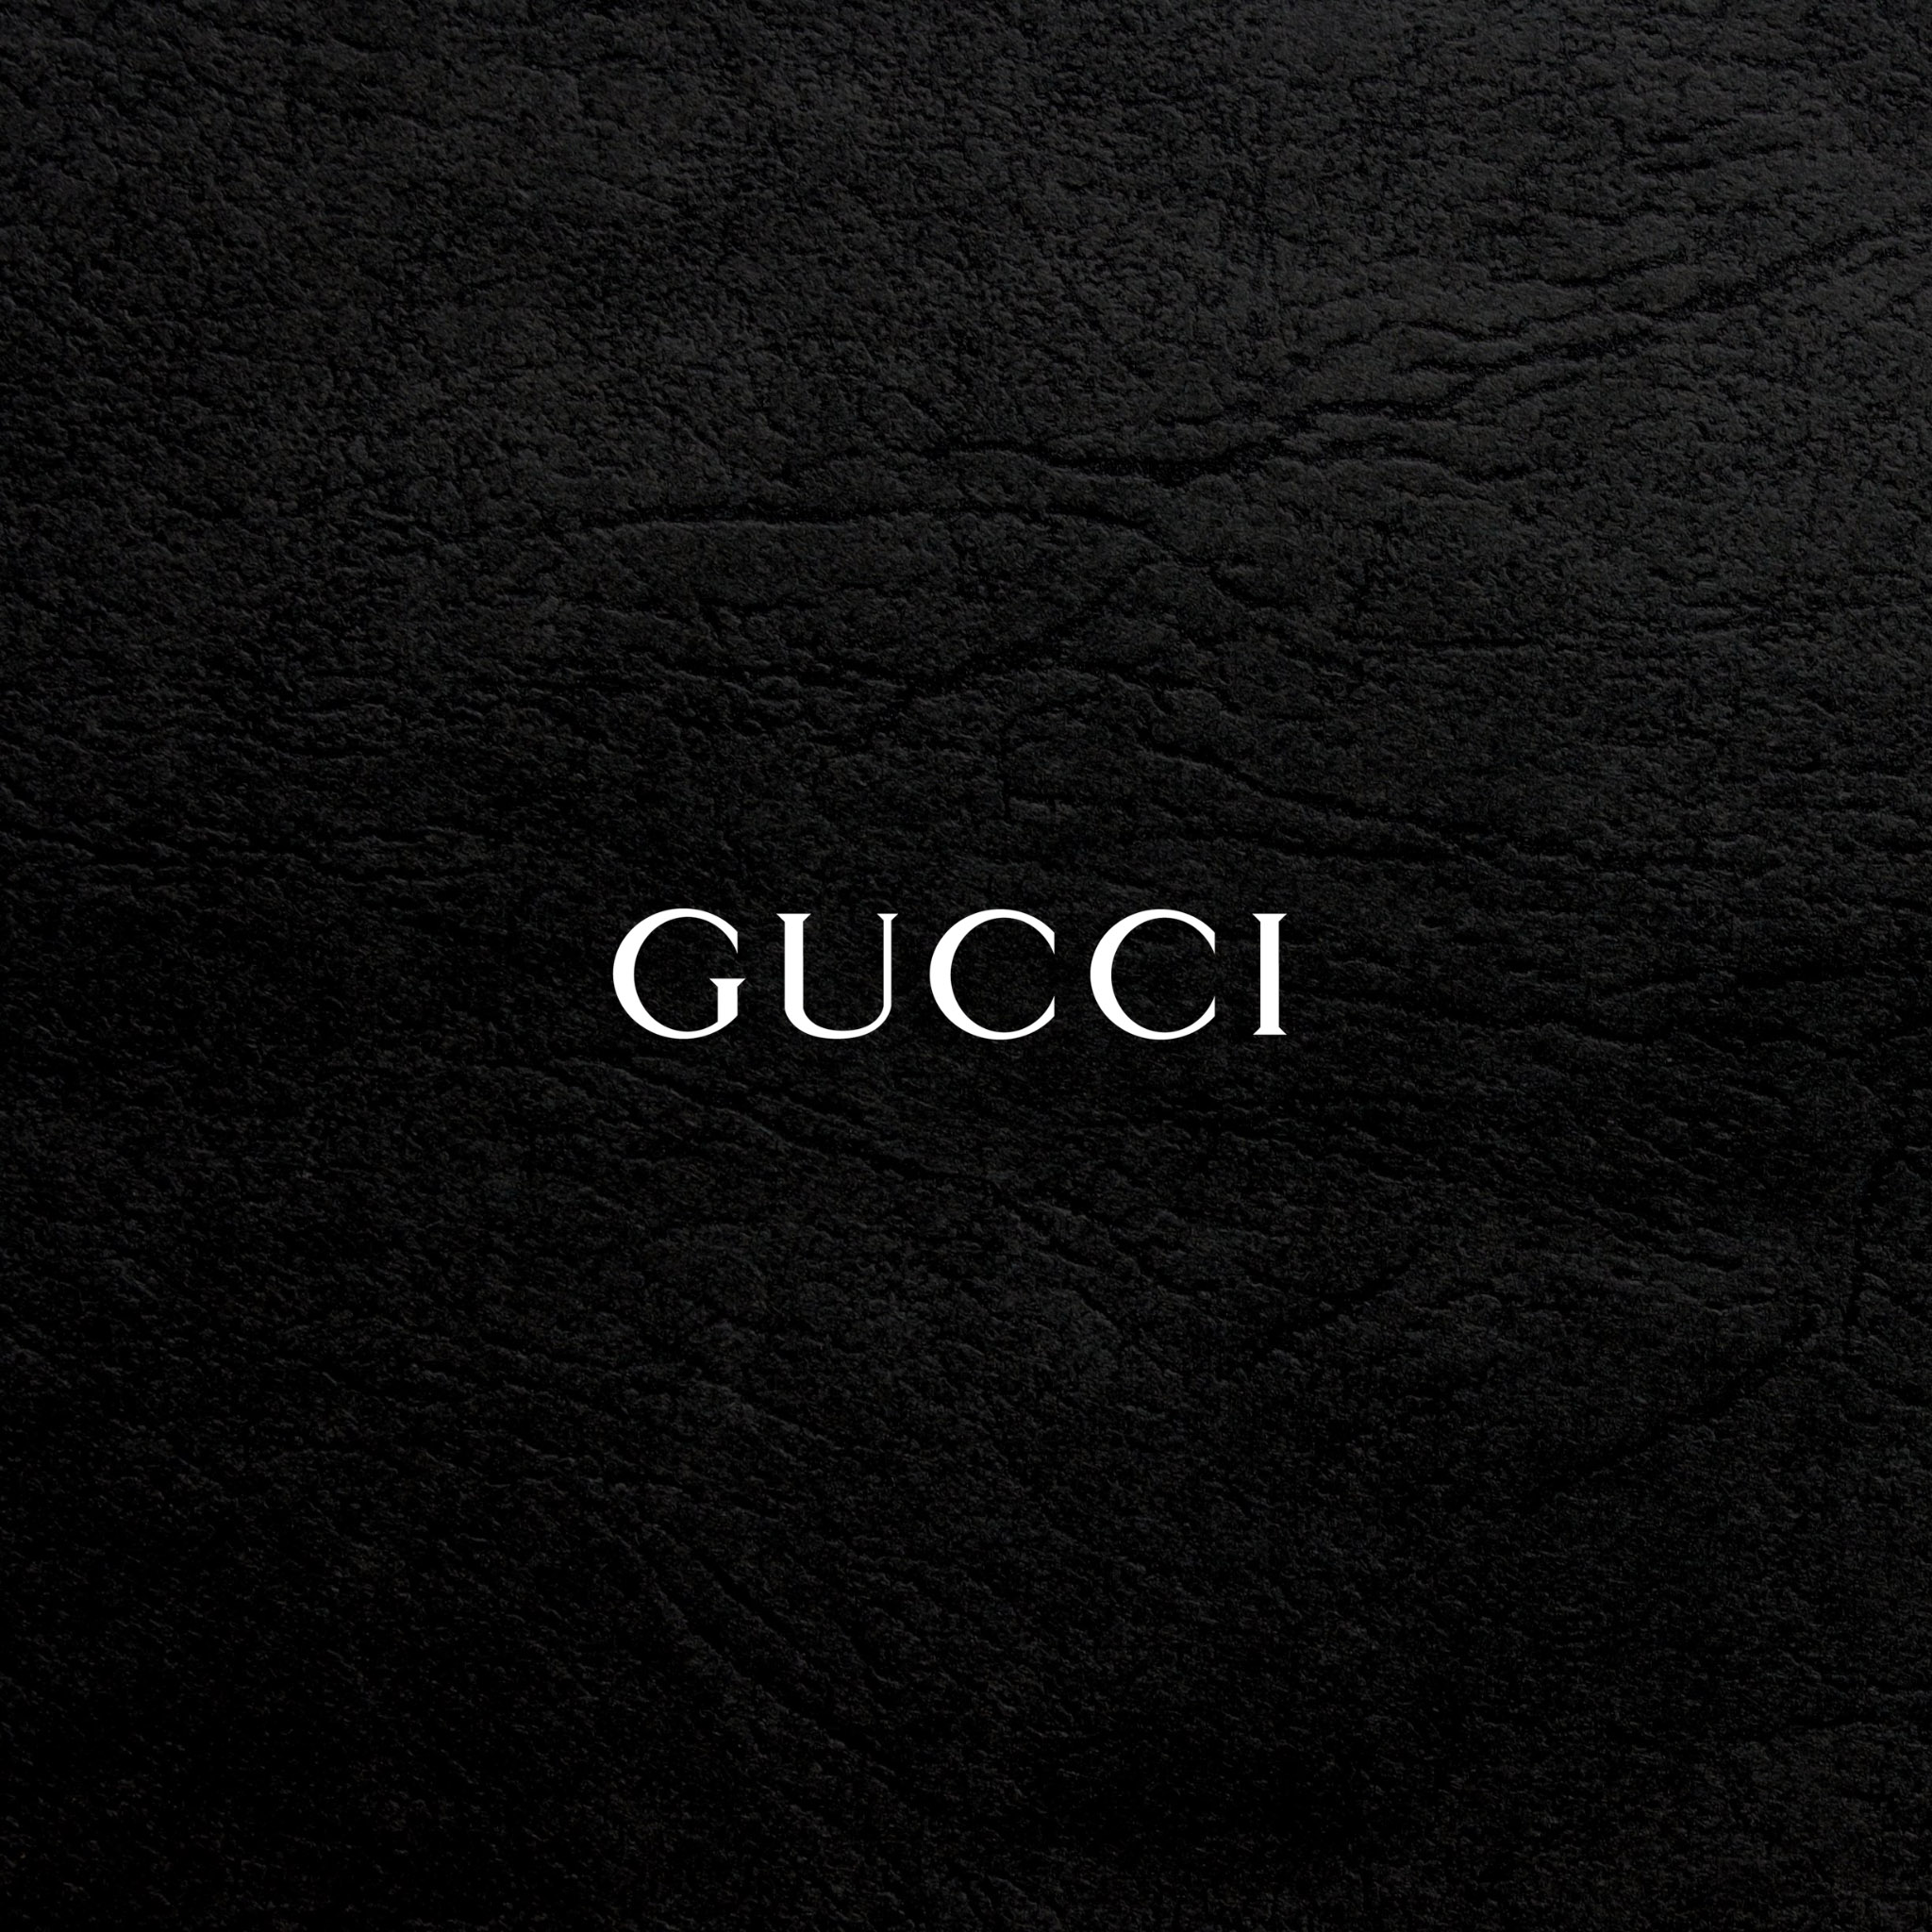 ブランド Gucciのipad壁紙 Ipad タブレット壁紙ギャラリー